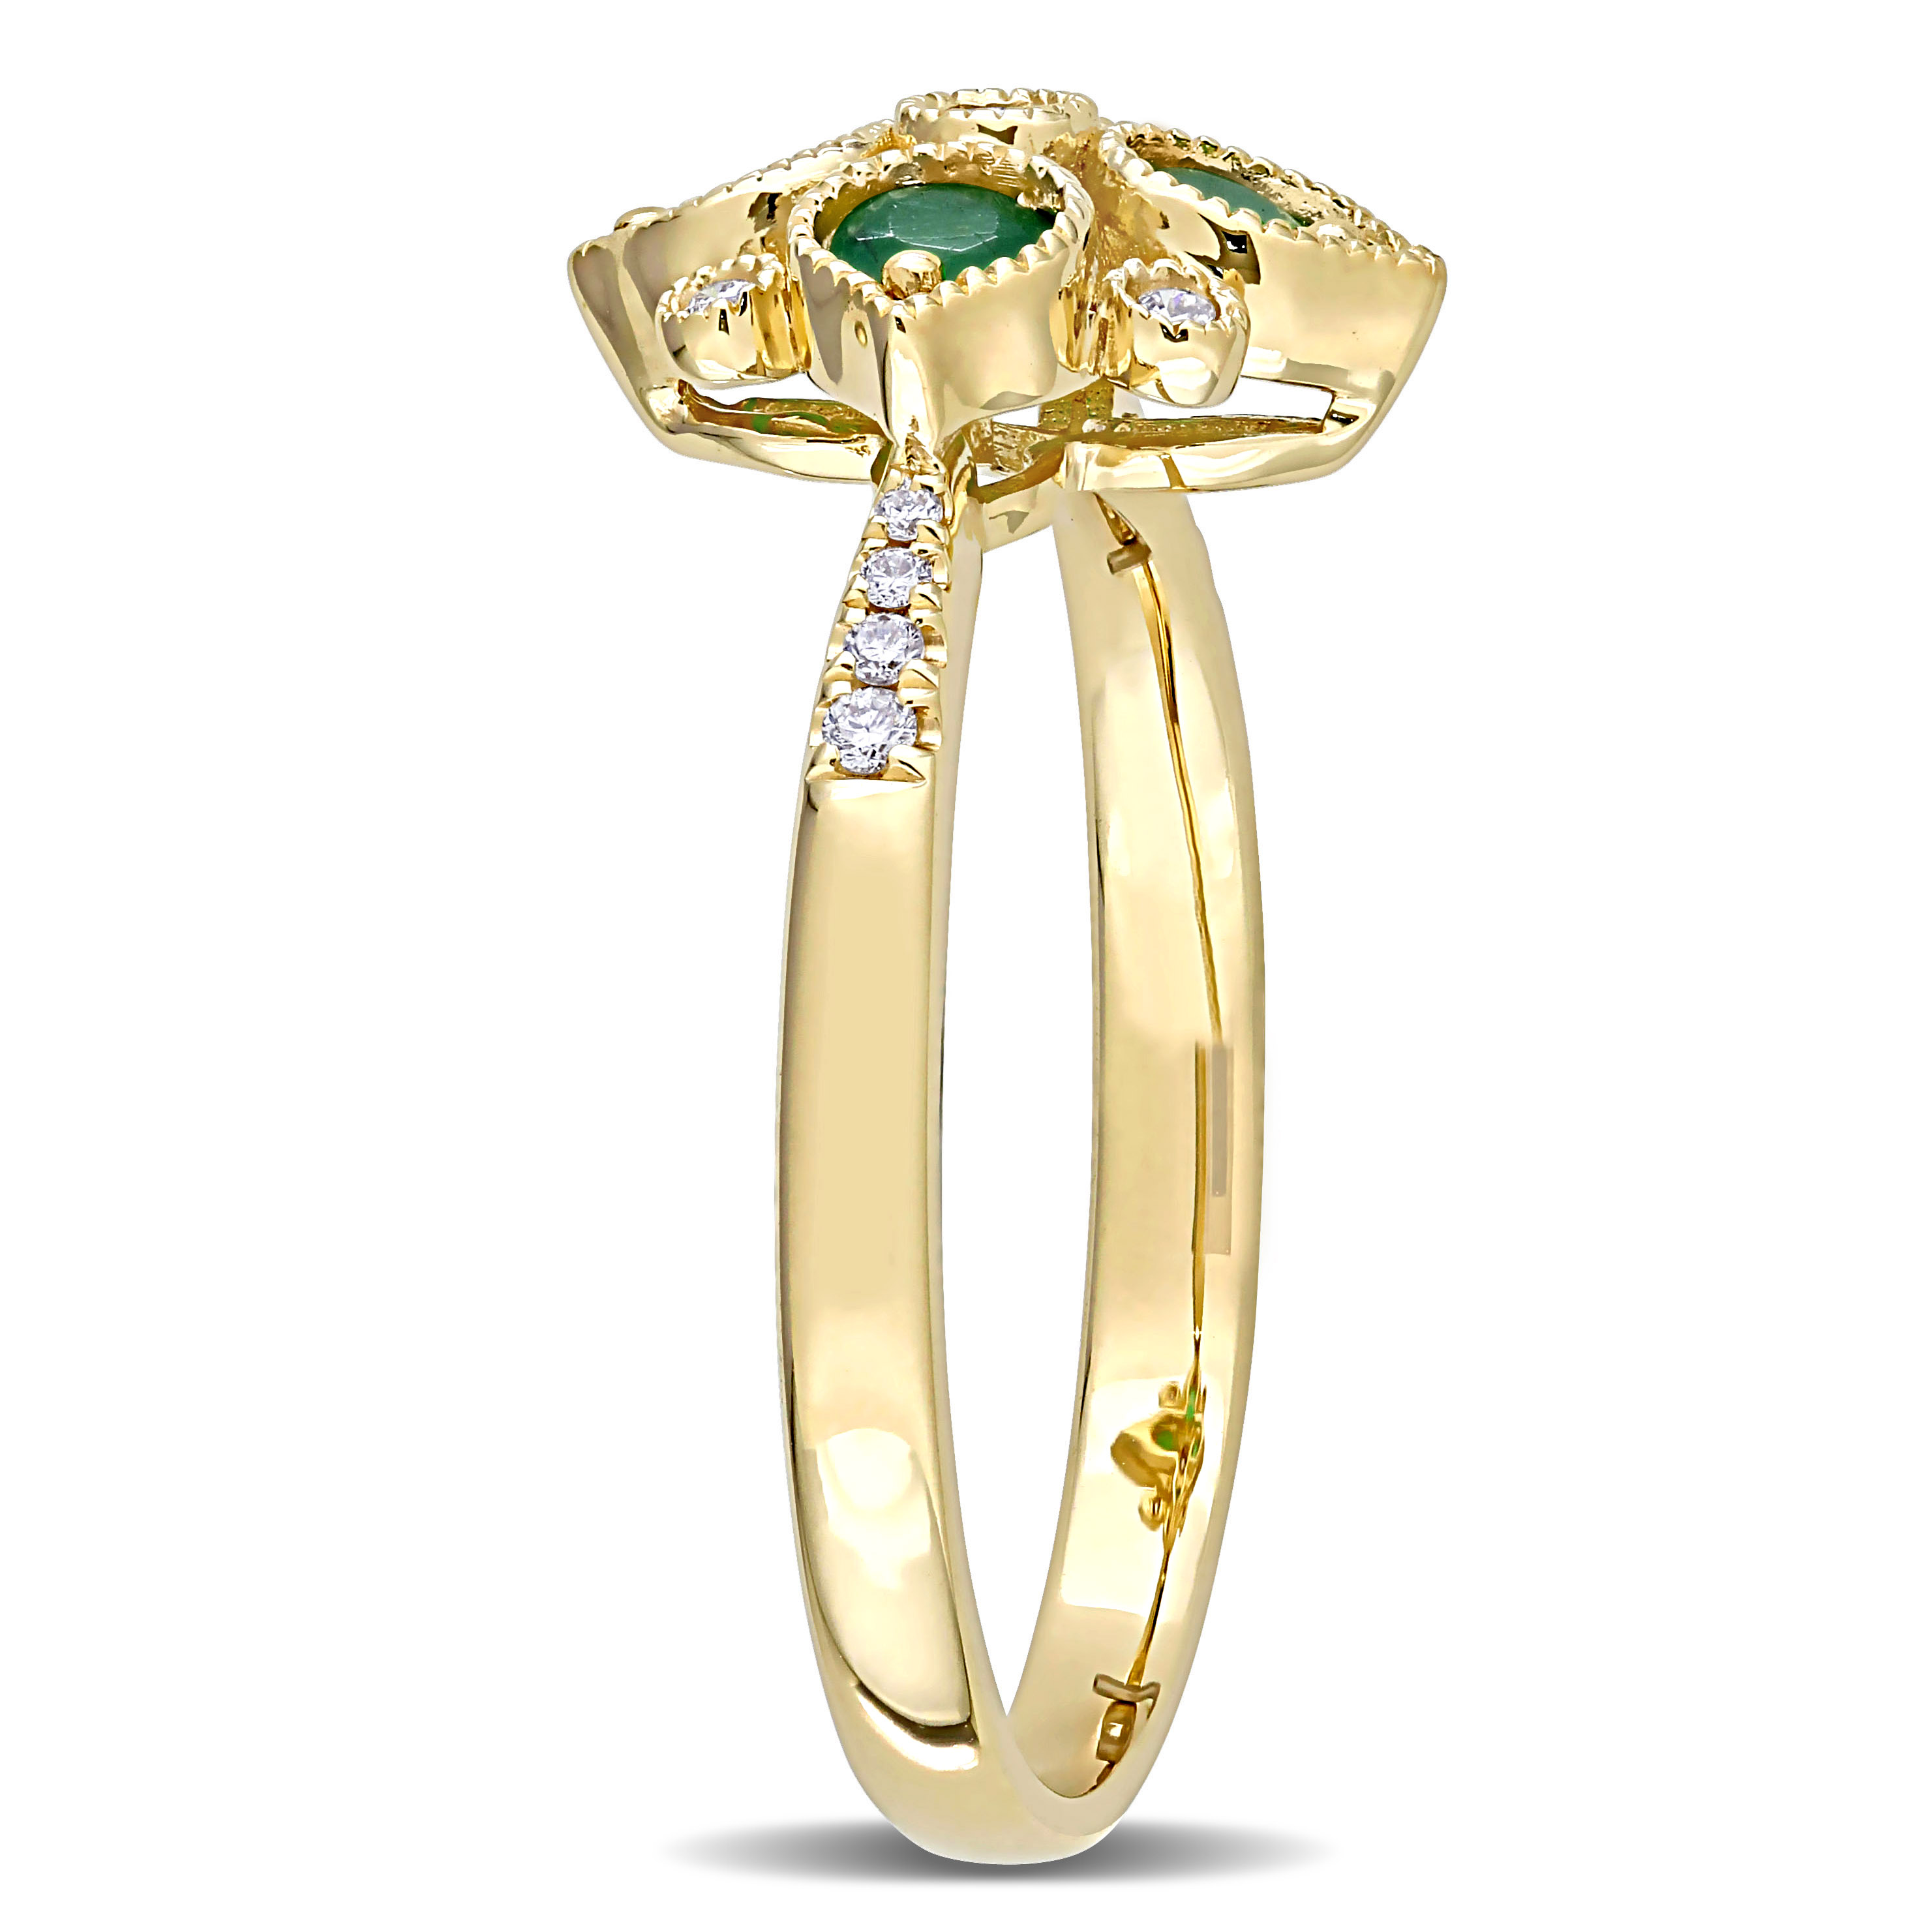 Emerald and Diamond Geometric Ring in 14k Yellow Gold